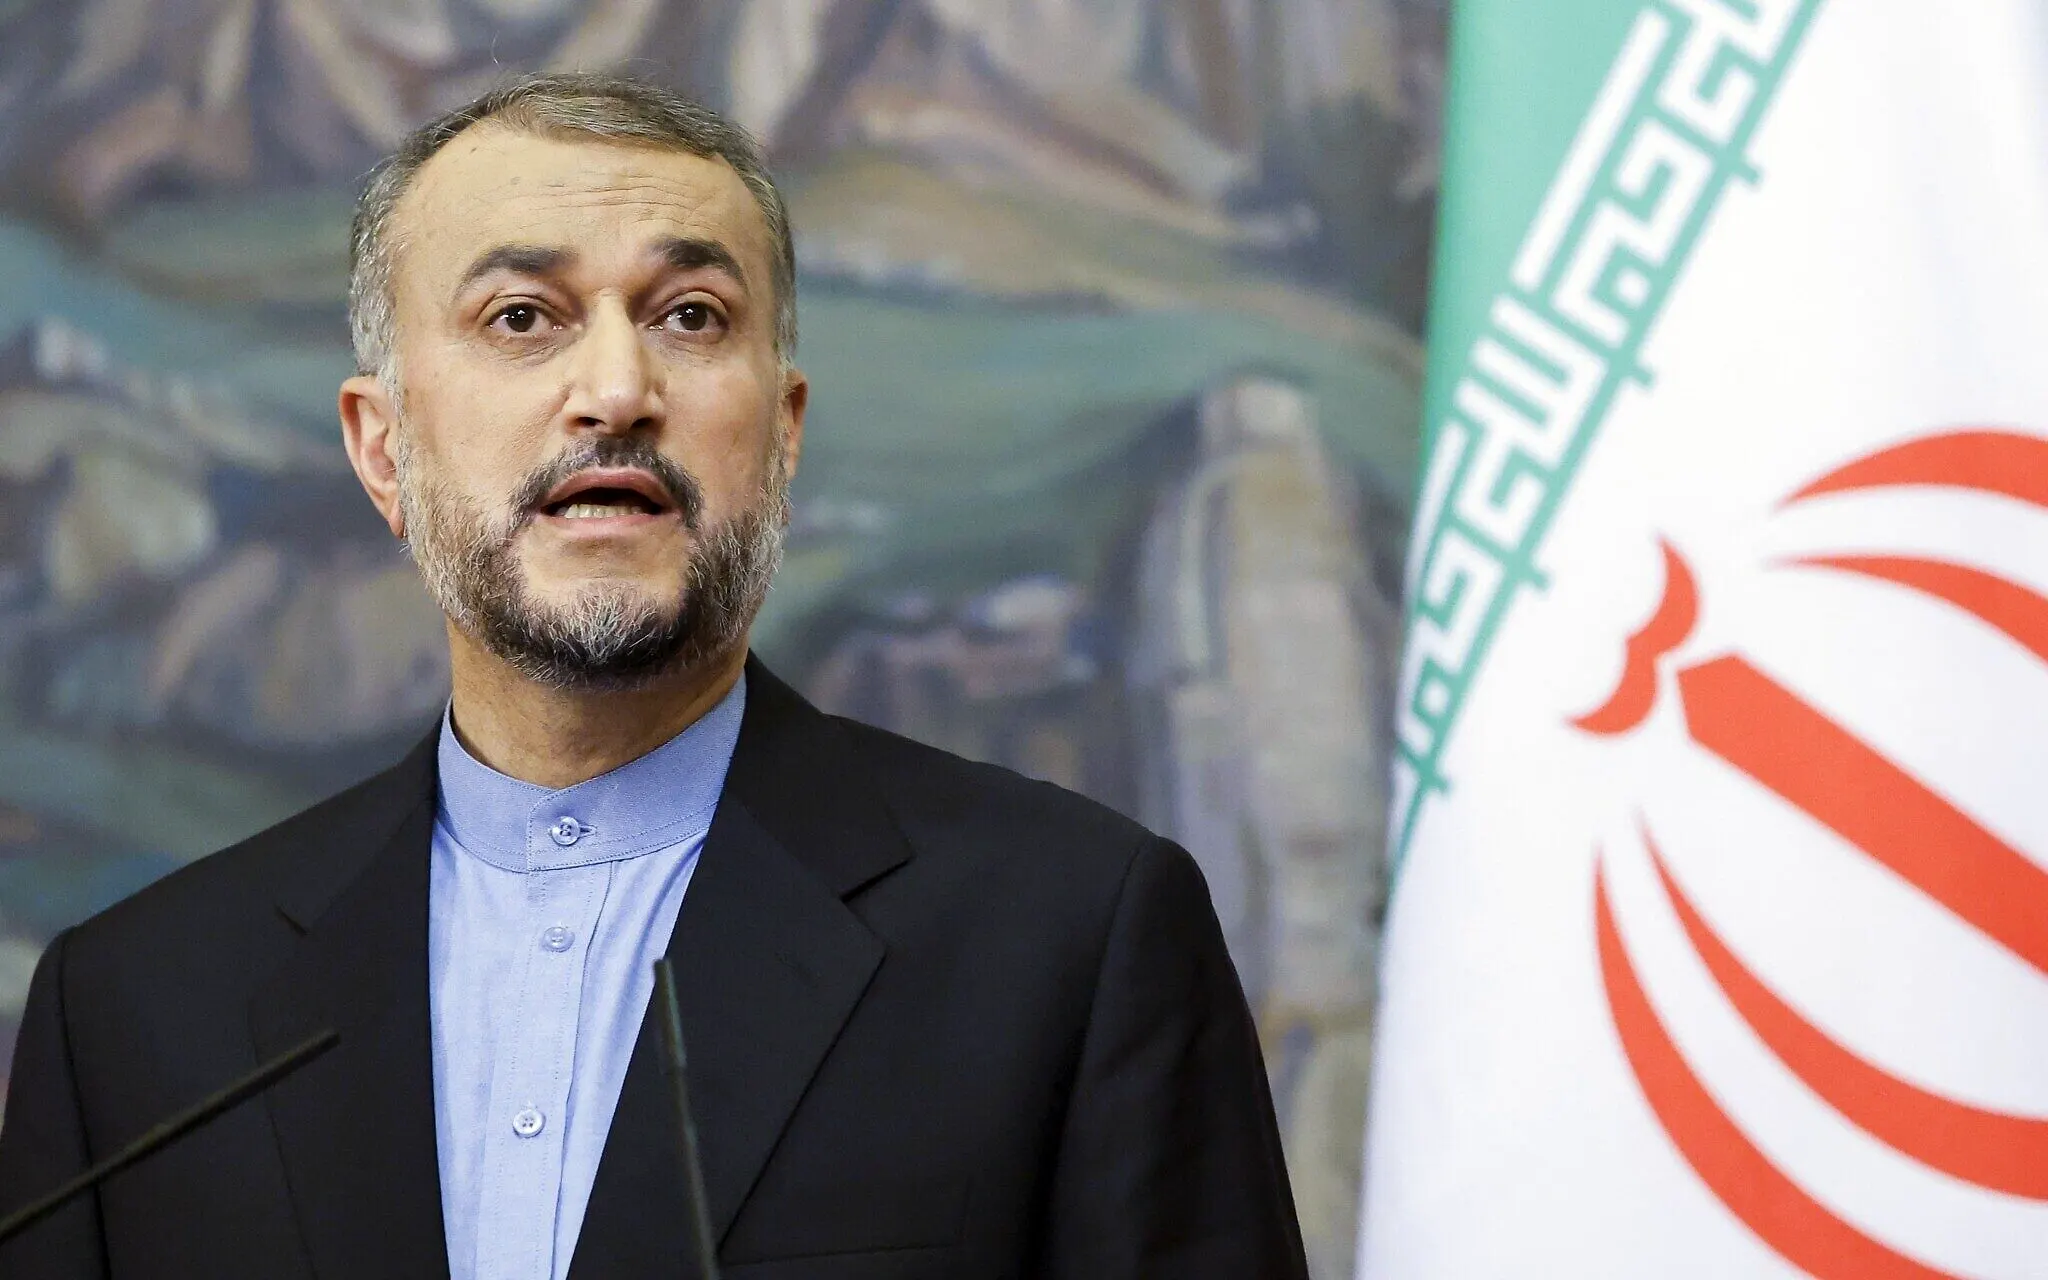 El equipo iraní se reunirá con el organismo de control de la ONU en Viena para intentar “salvar” el acuerdo nuclear